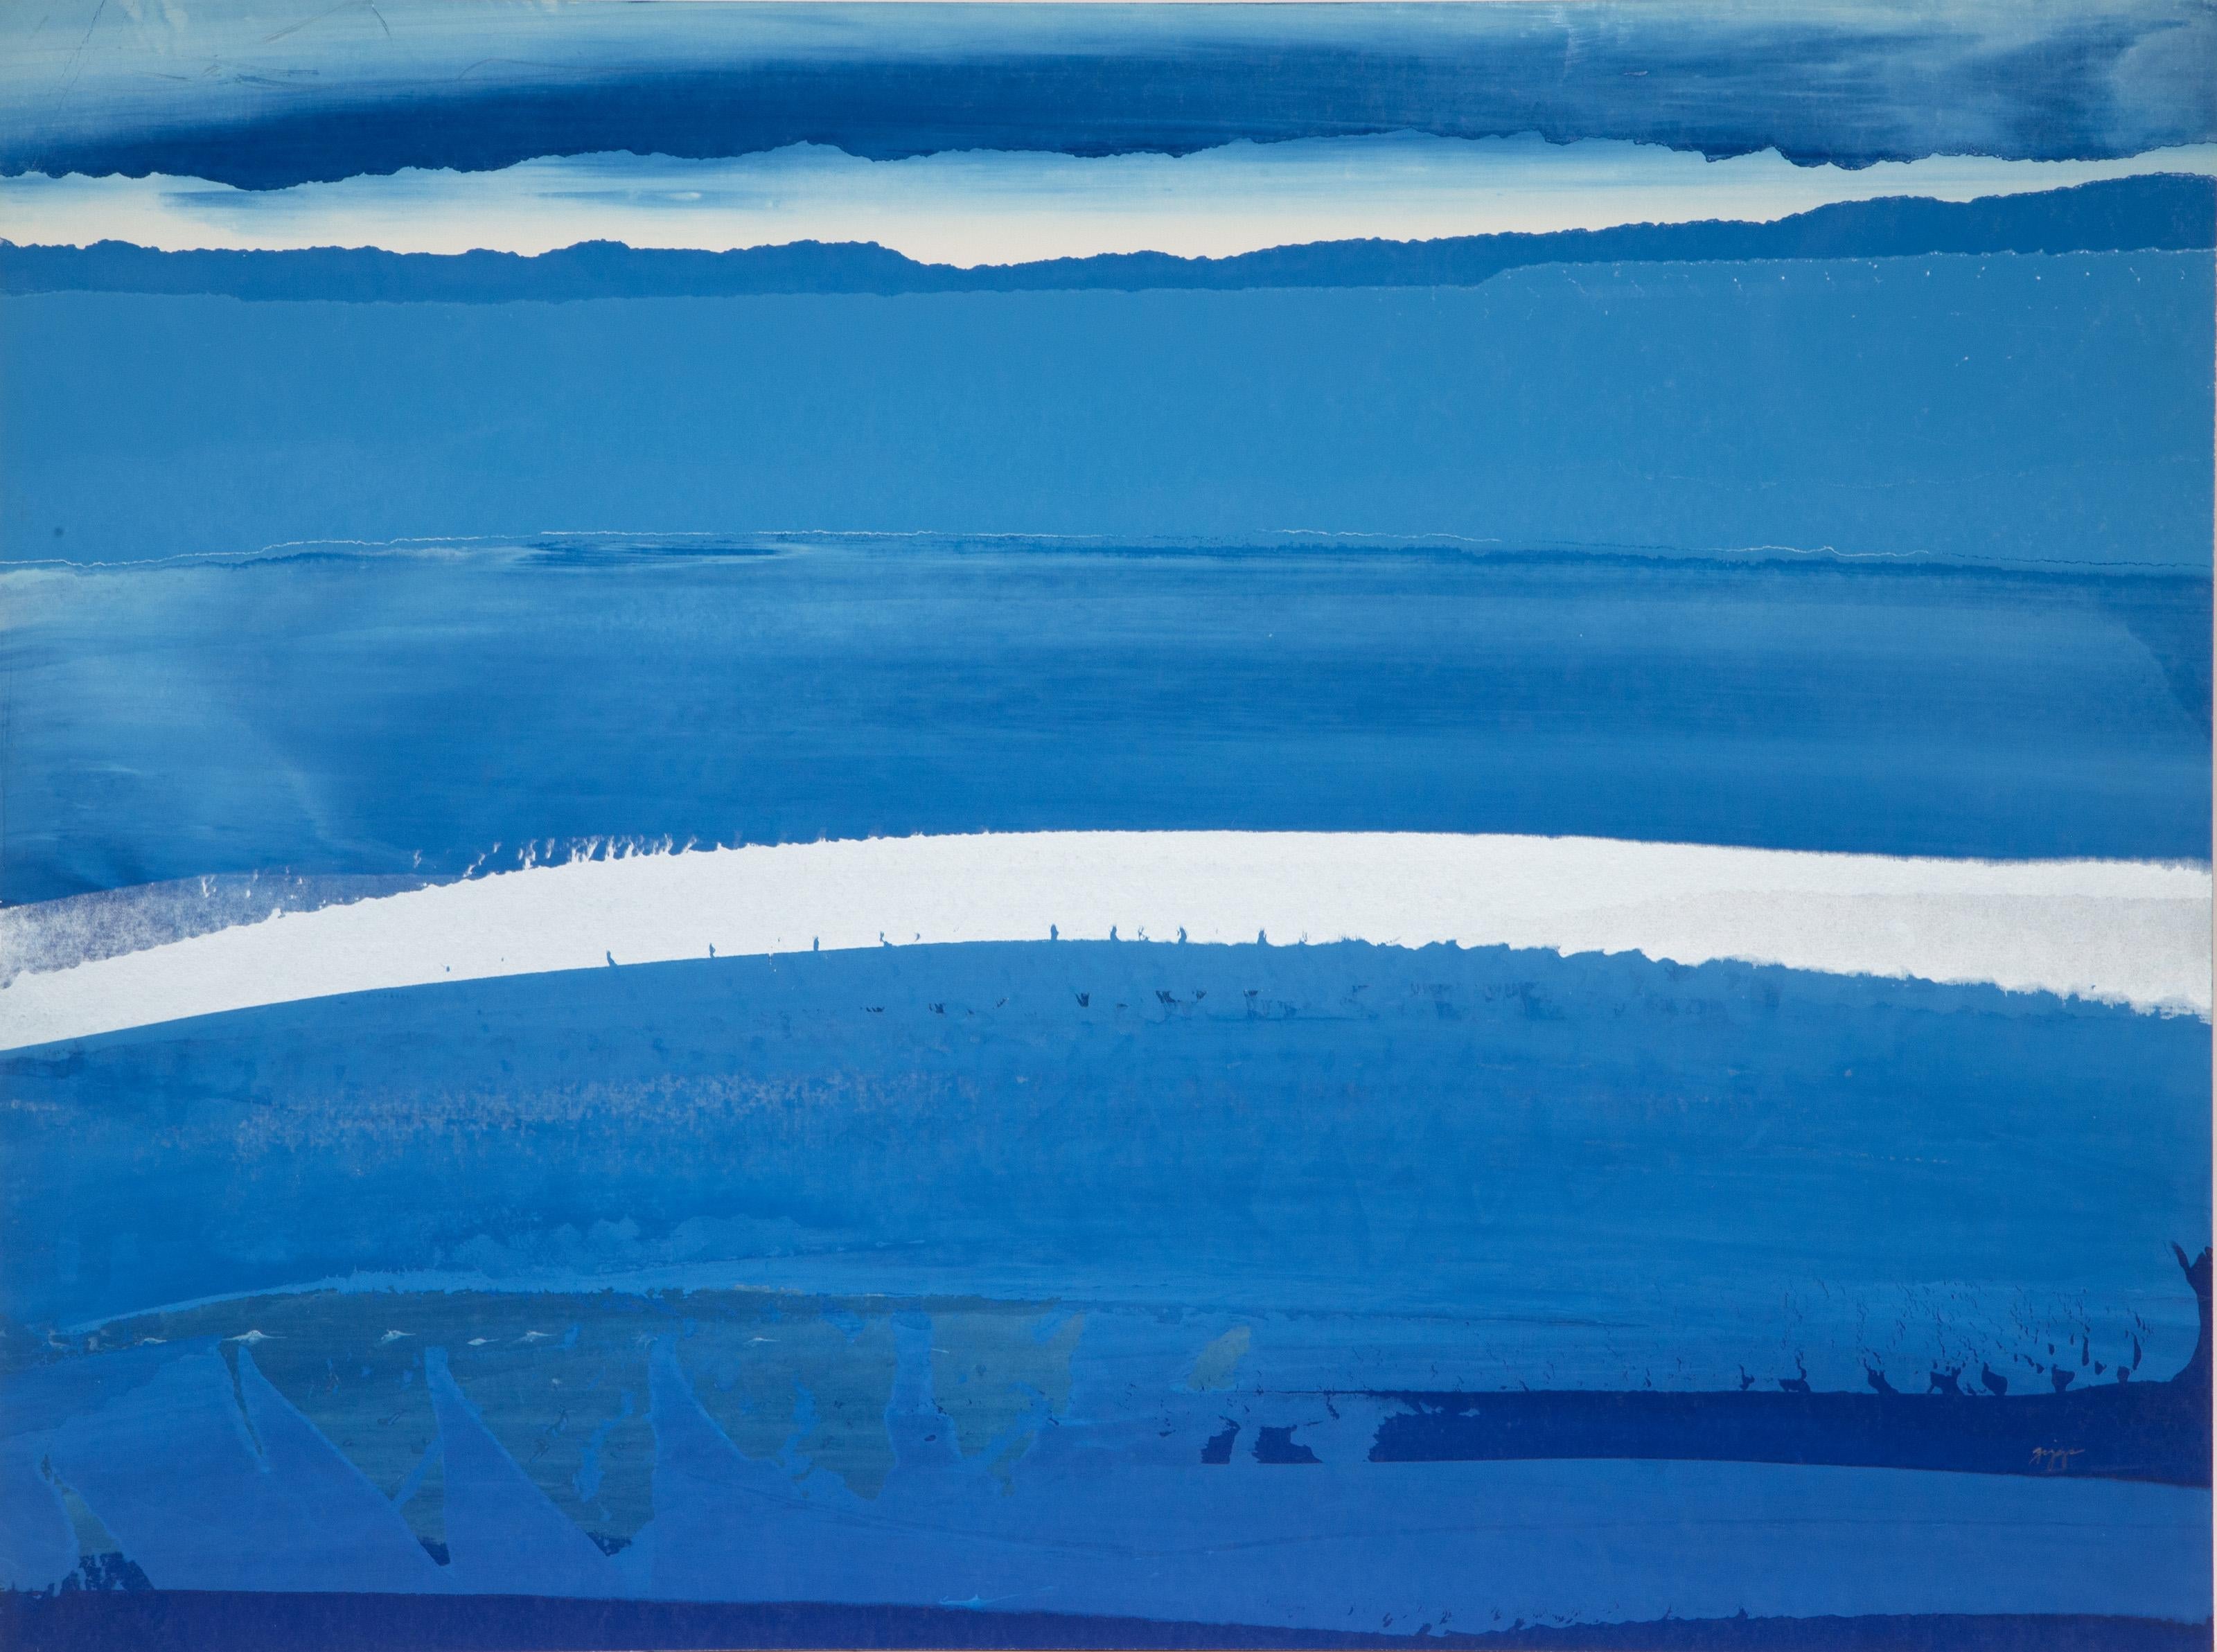 Paysage en bleu et argent
Joseph Grippi, Américain (1924-2001)
Sérigraphie, signée au crayon
Taille : 30 x 40 in. (76.2 x 101.6 cm)